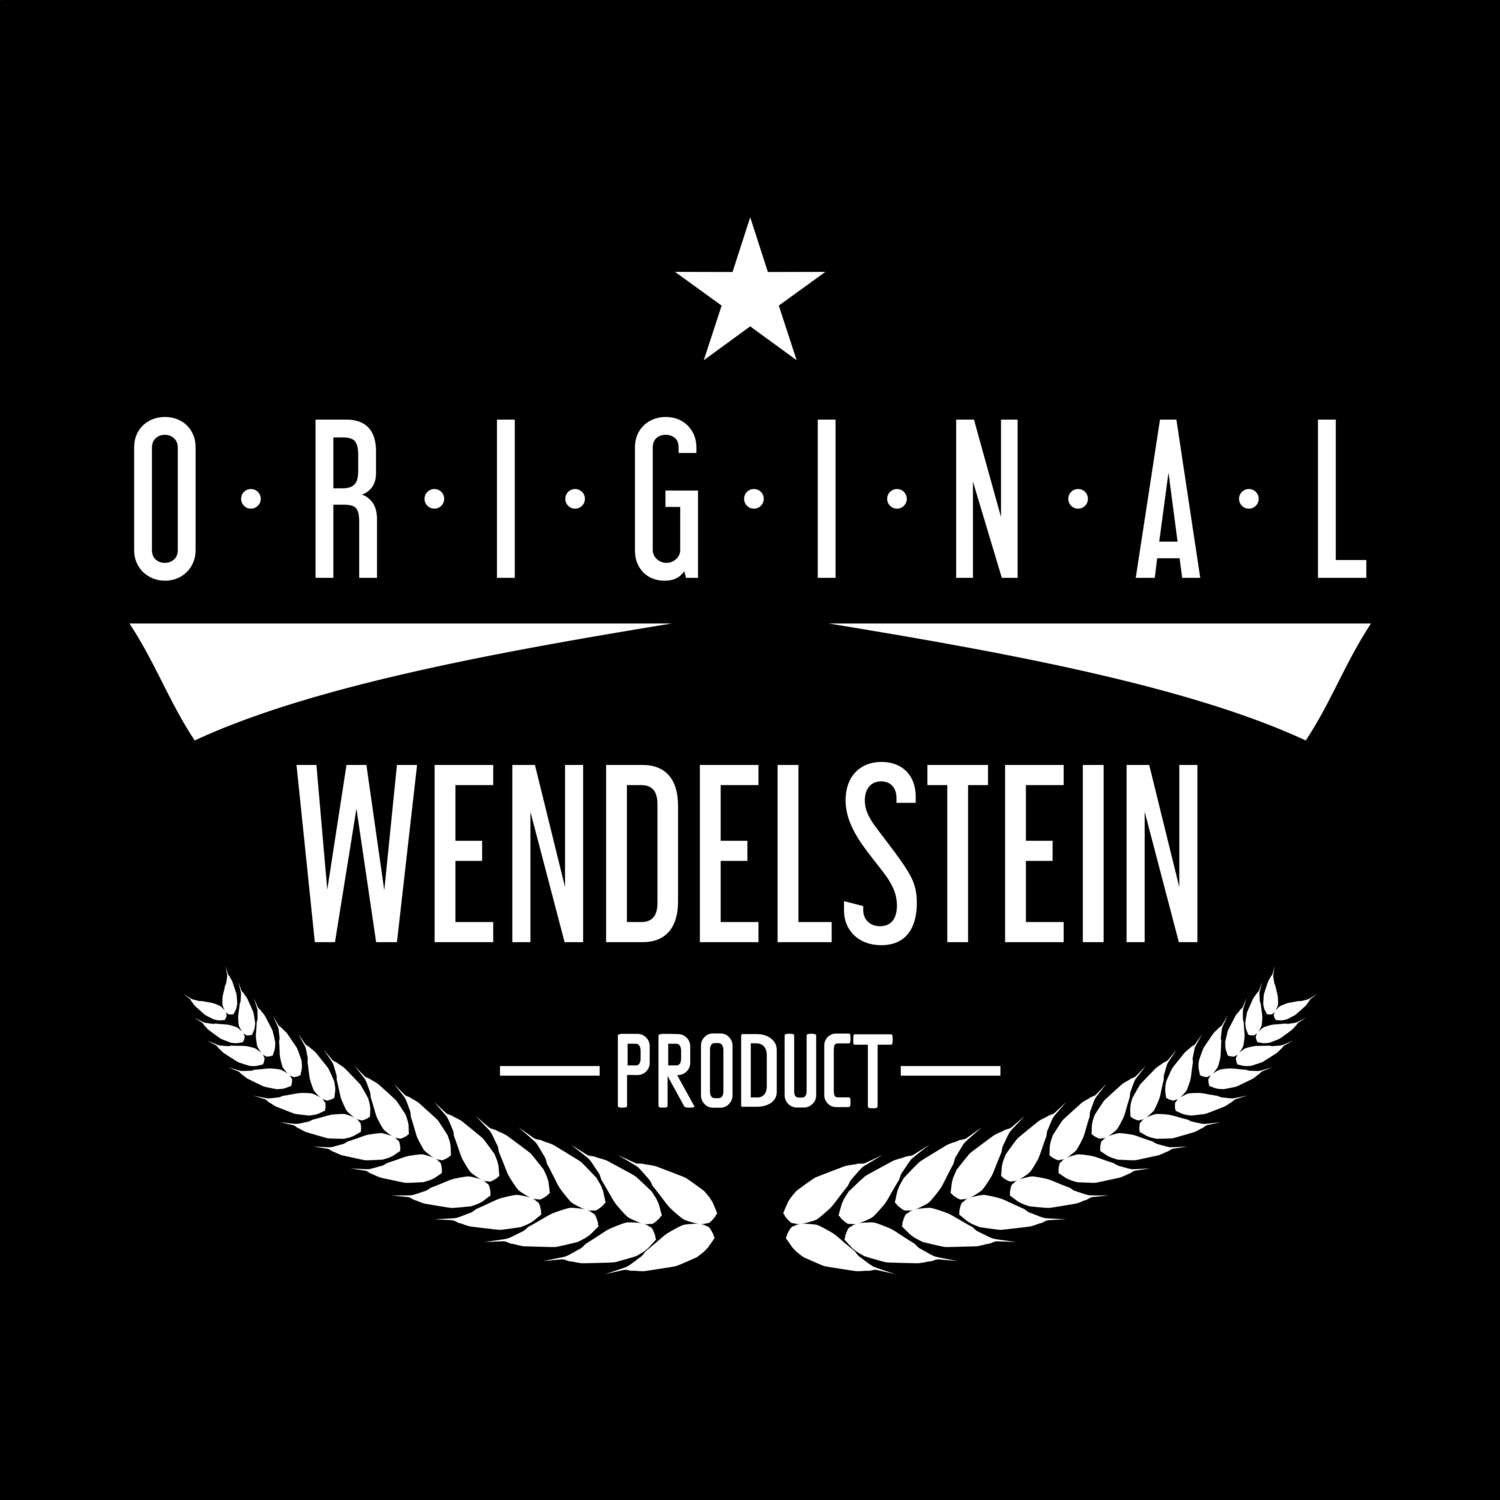 Wendelstein T-Shirt »Original Product«